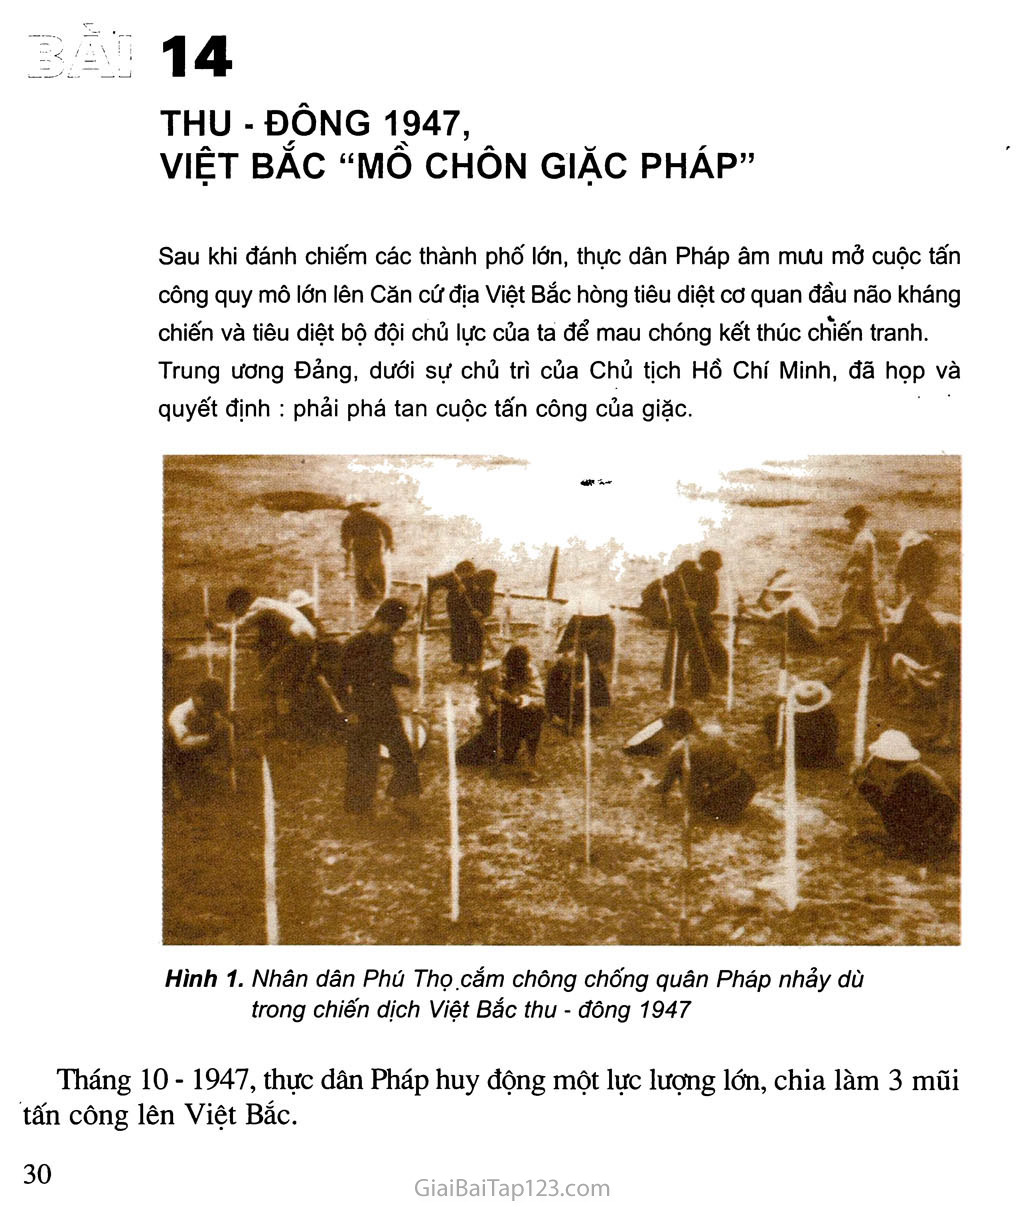 Bài 14. Thu - đông 1947, Việt Bắc “mồ chôn giặc Pháp” trang 1